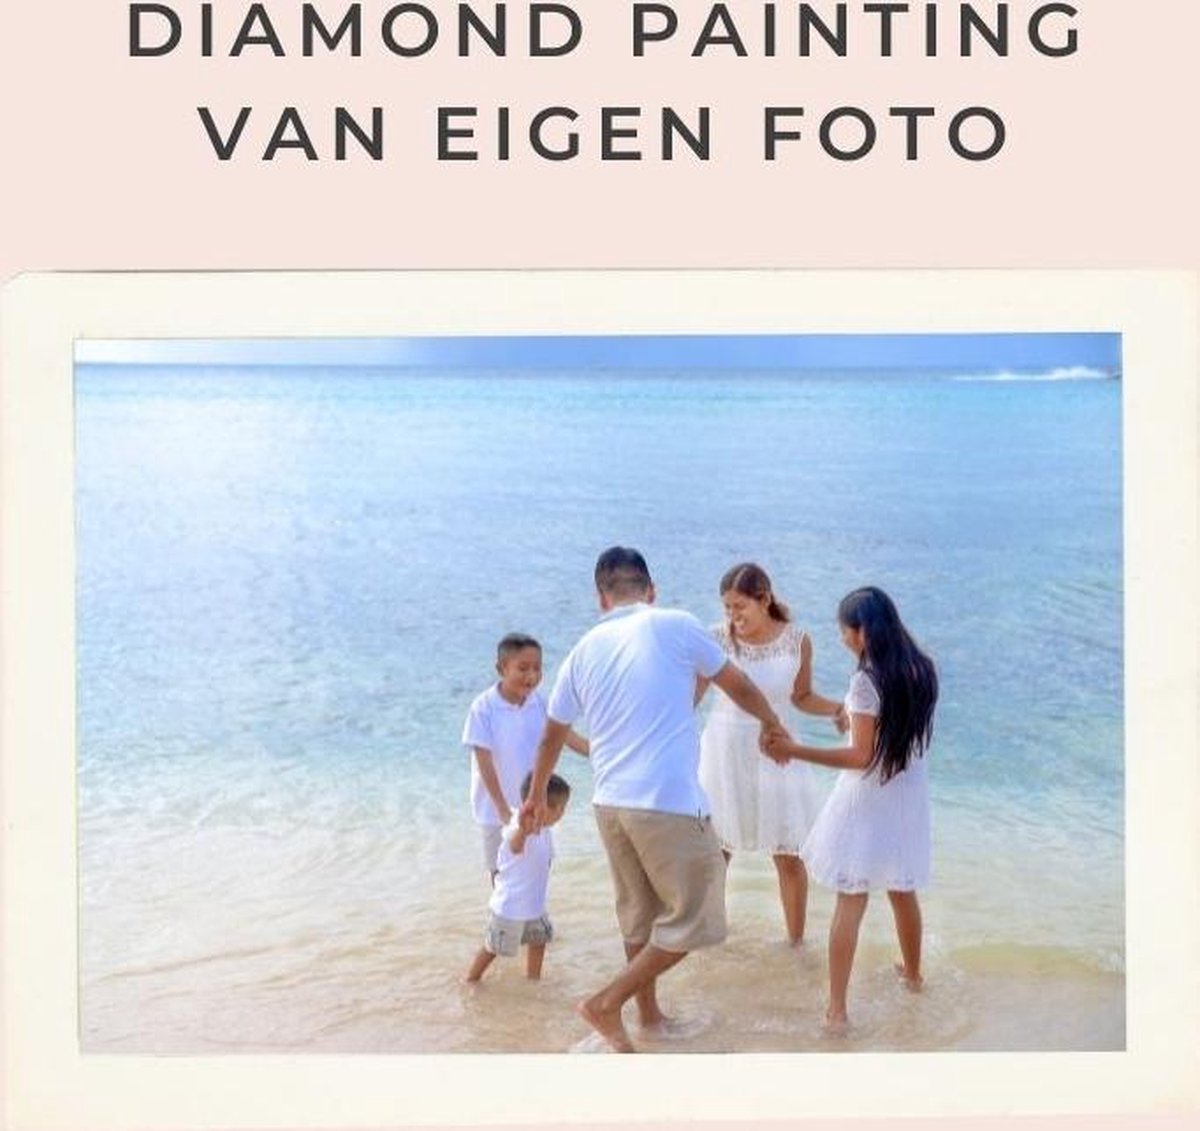 Afbeelding van product Diamond painting eigen foto - Geproduceerd in Nederland - 60 x 90 cm - dibond materiaal - vierkante steentjes - Binnen 2-3 werkdagen in huis